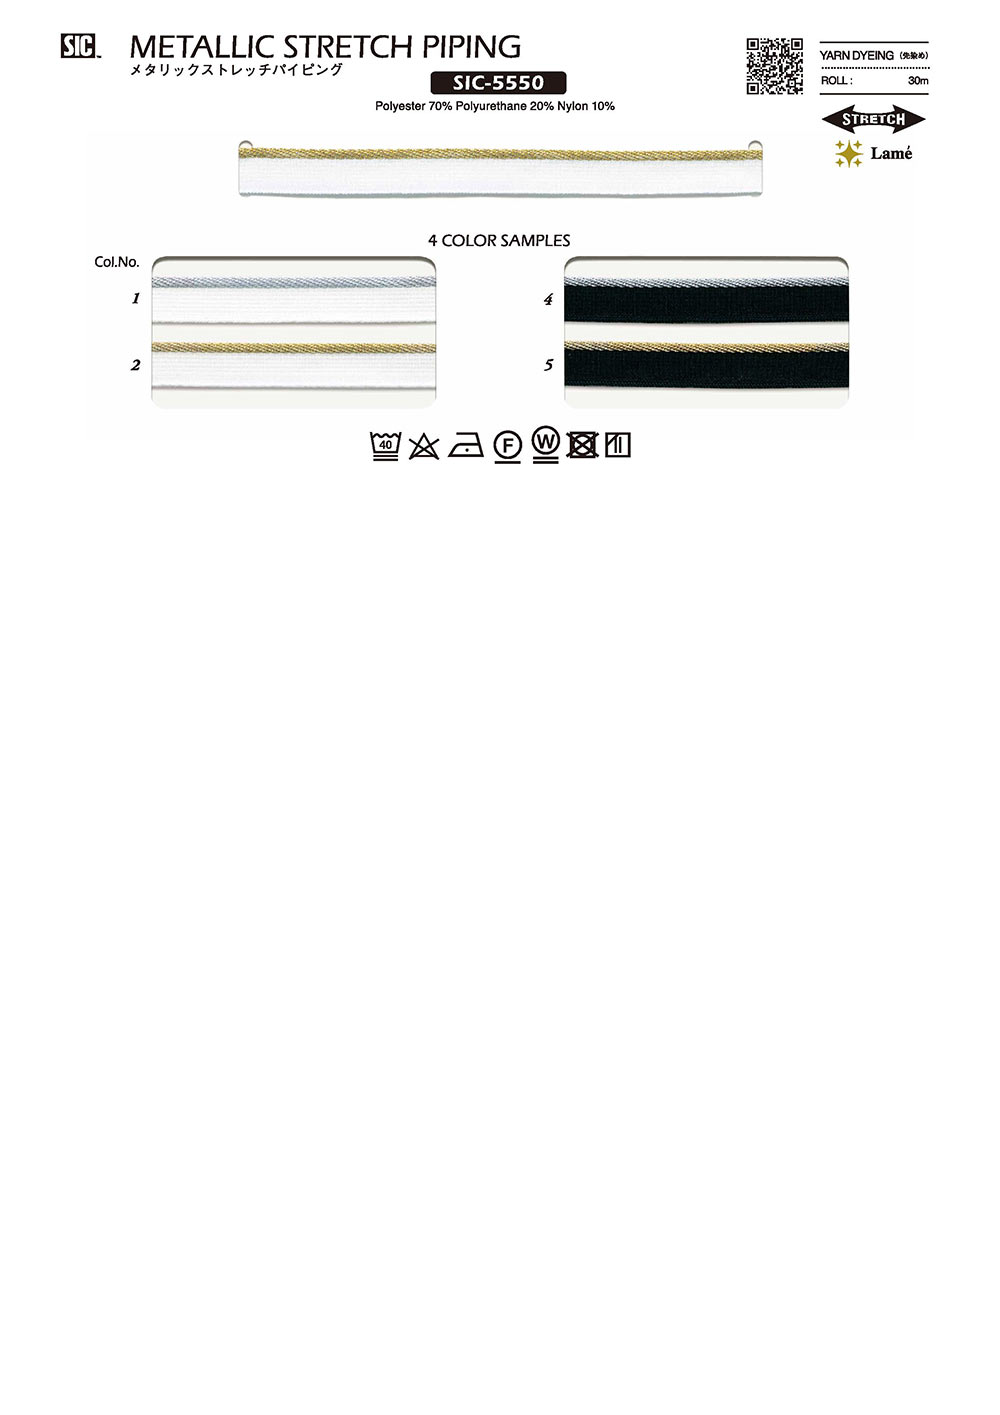 SIC-5550 Metallisches Stretch-Paspelband[Bandbandschnur] SHINDO(SIC)